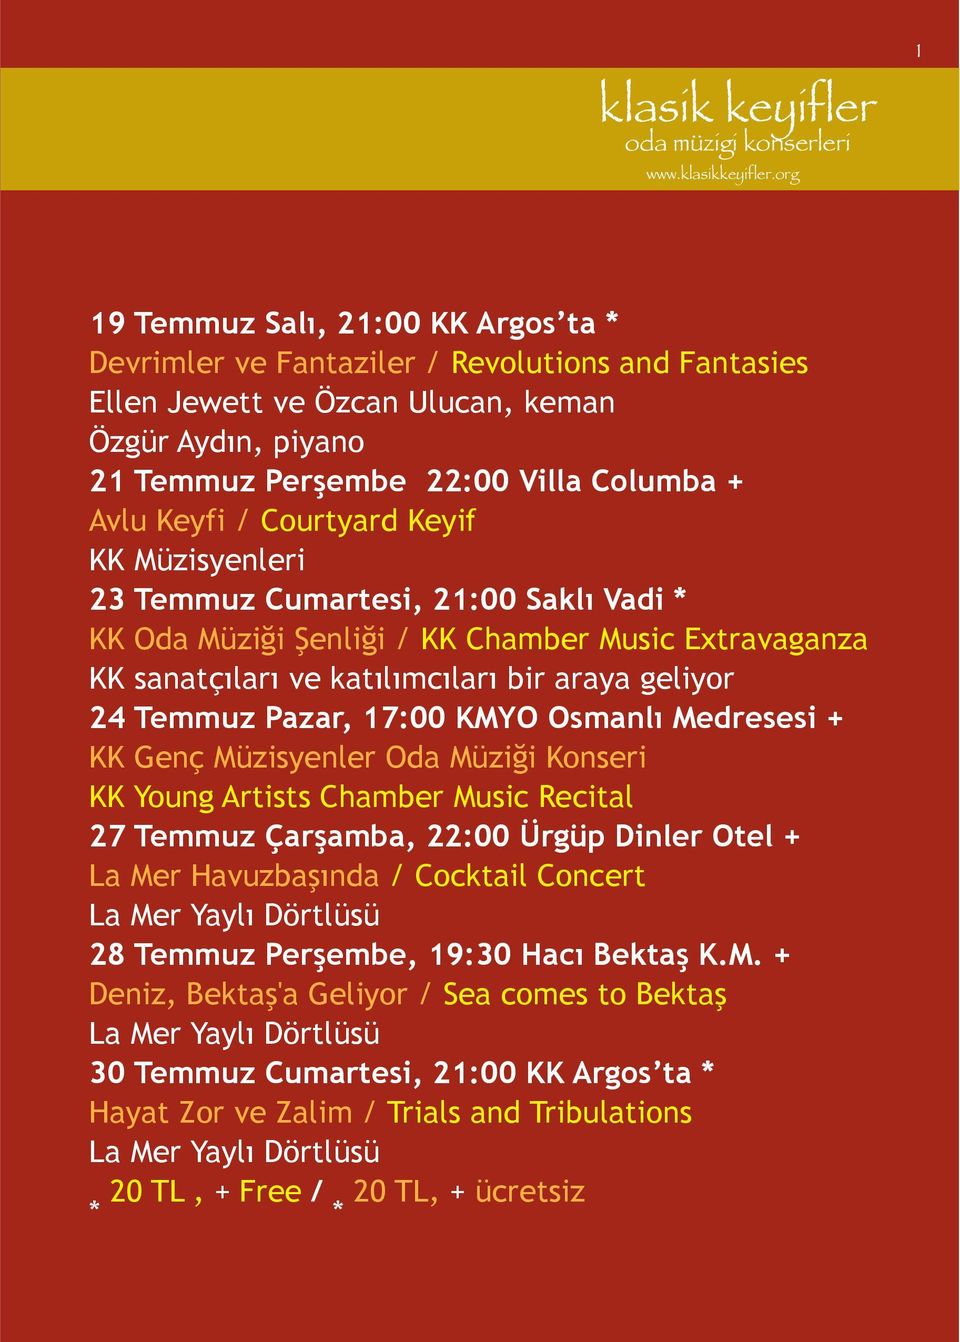 KMYO Osmanlı Medresesi + KK Genç Müzisyenler Oda Müziği Konseri KK Young Artists Chamber Music Recital 27 Temmuz Çarşamba, 22:00 Ürgüp Dinler Otel + La Mer Havuzbaşında / Cocktail Concert La Mer